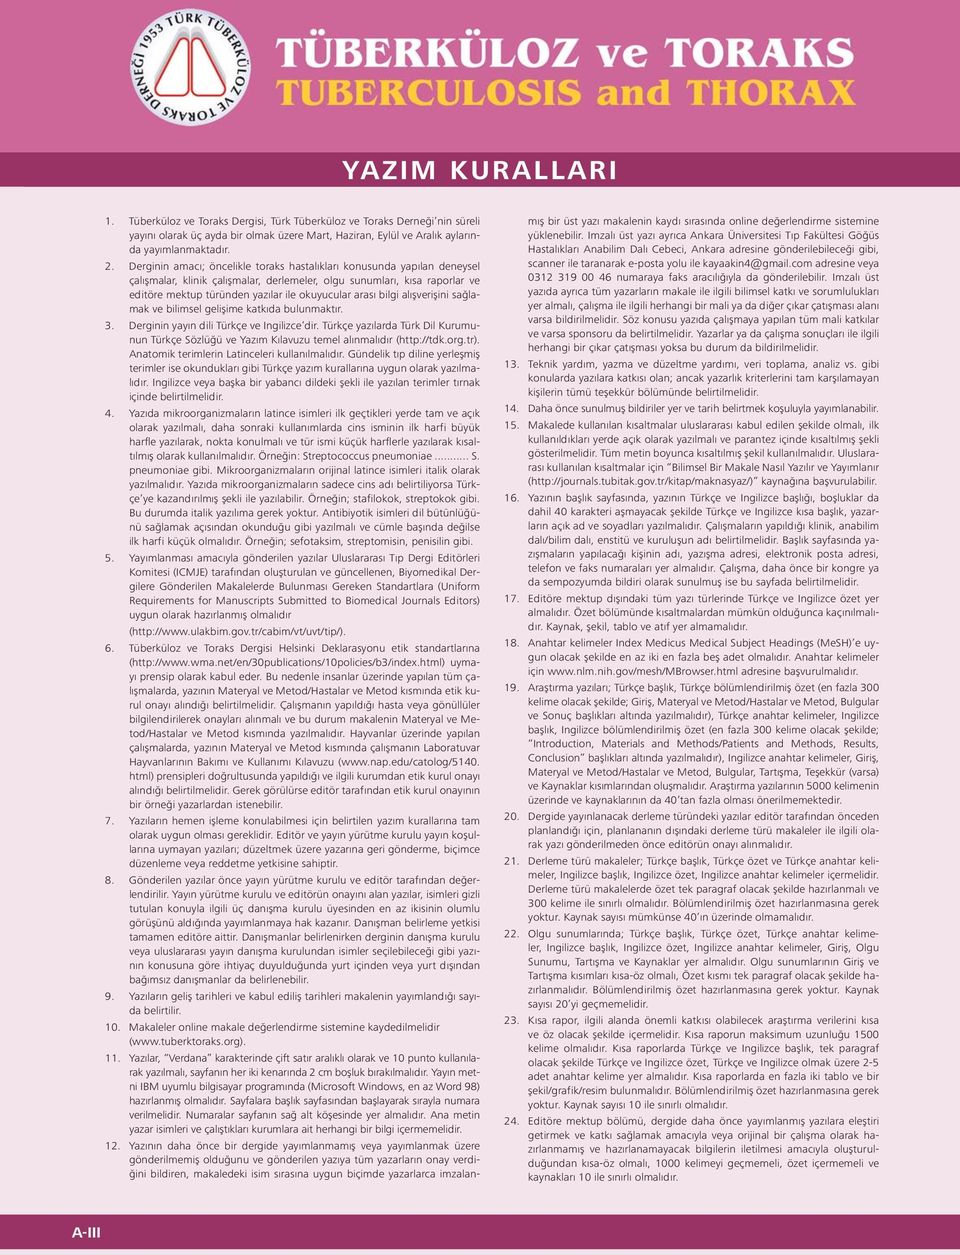 arası bilgi alışverişini sağlamak ve bilimsel gelişime katkıda bulunmaktır. 3. Derginin yayın dili Türkçe ve Ingilizce dir.